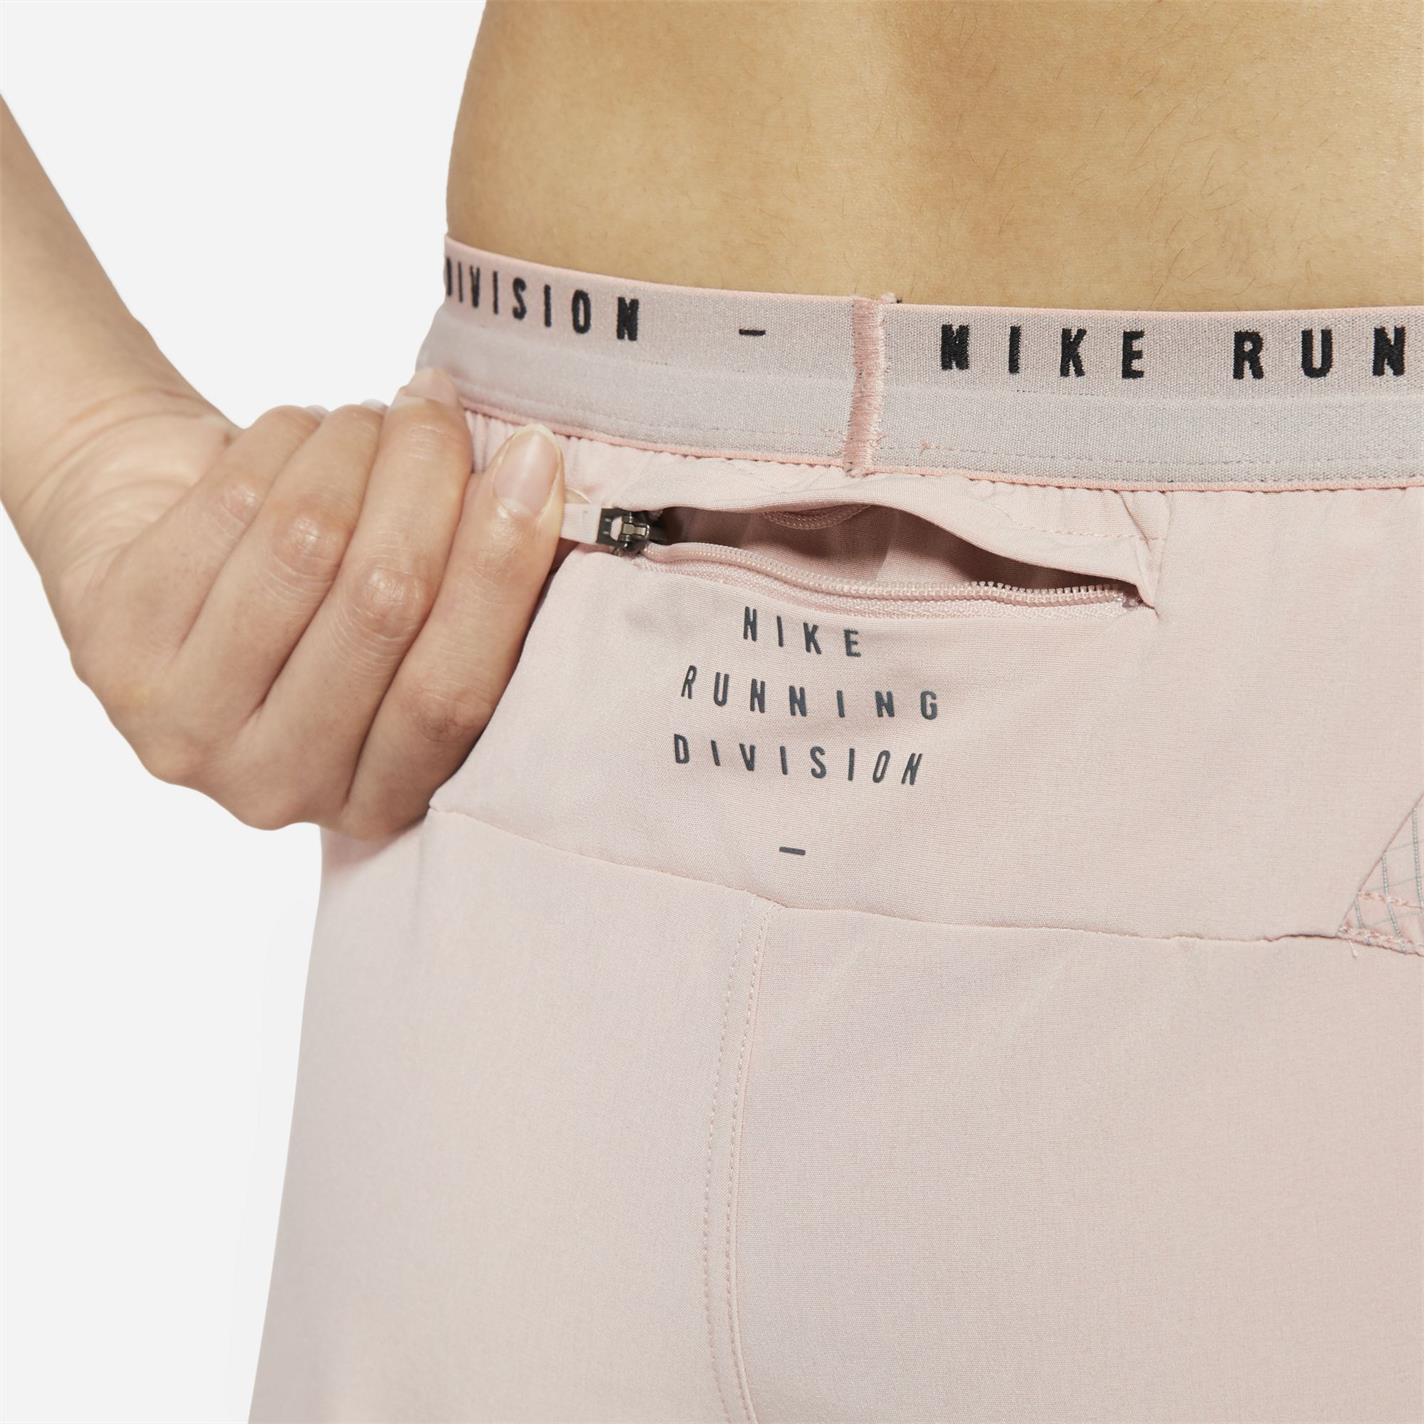 Pantaloni scurti Nike Tempo pentru femei roz